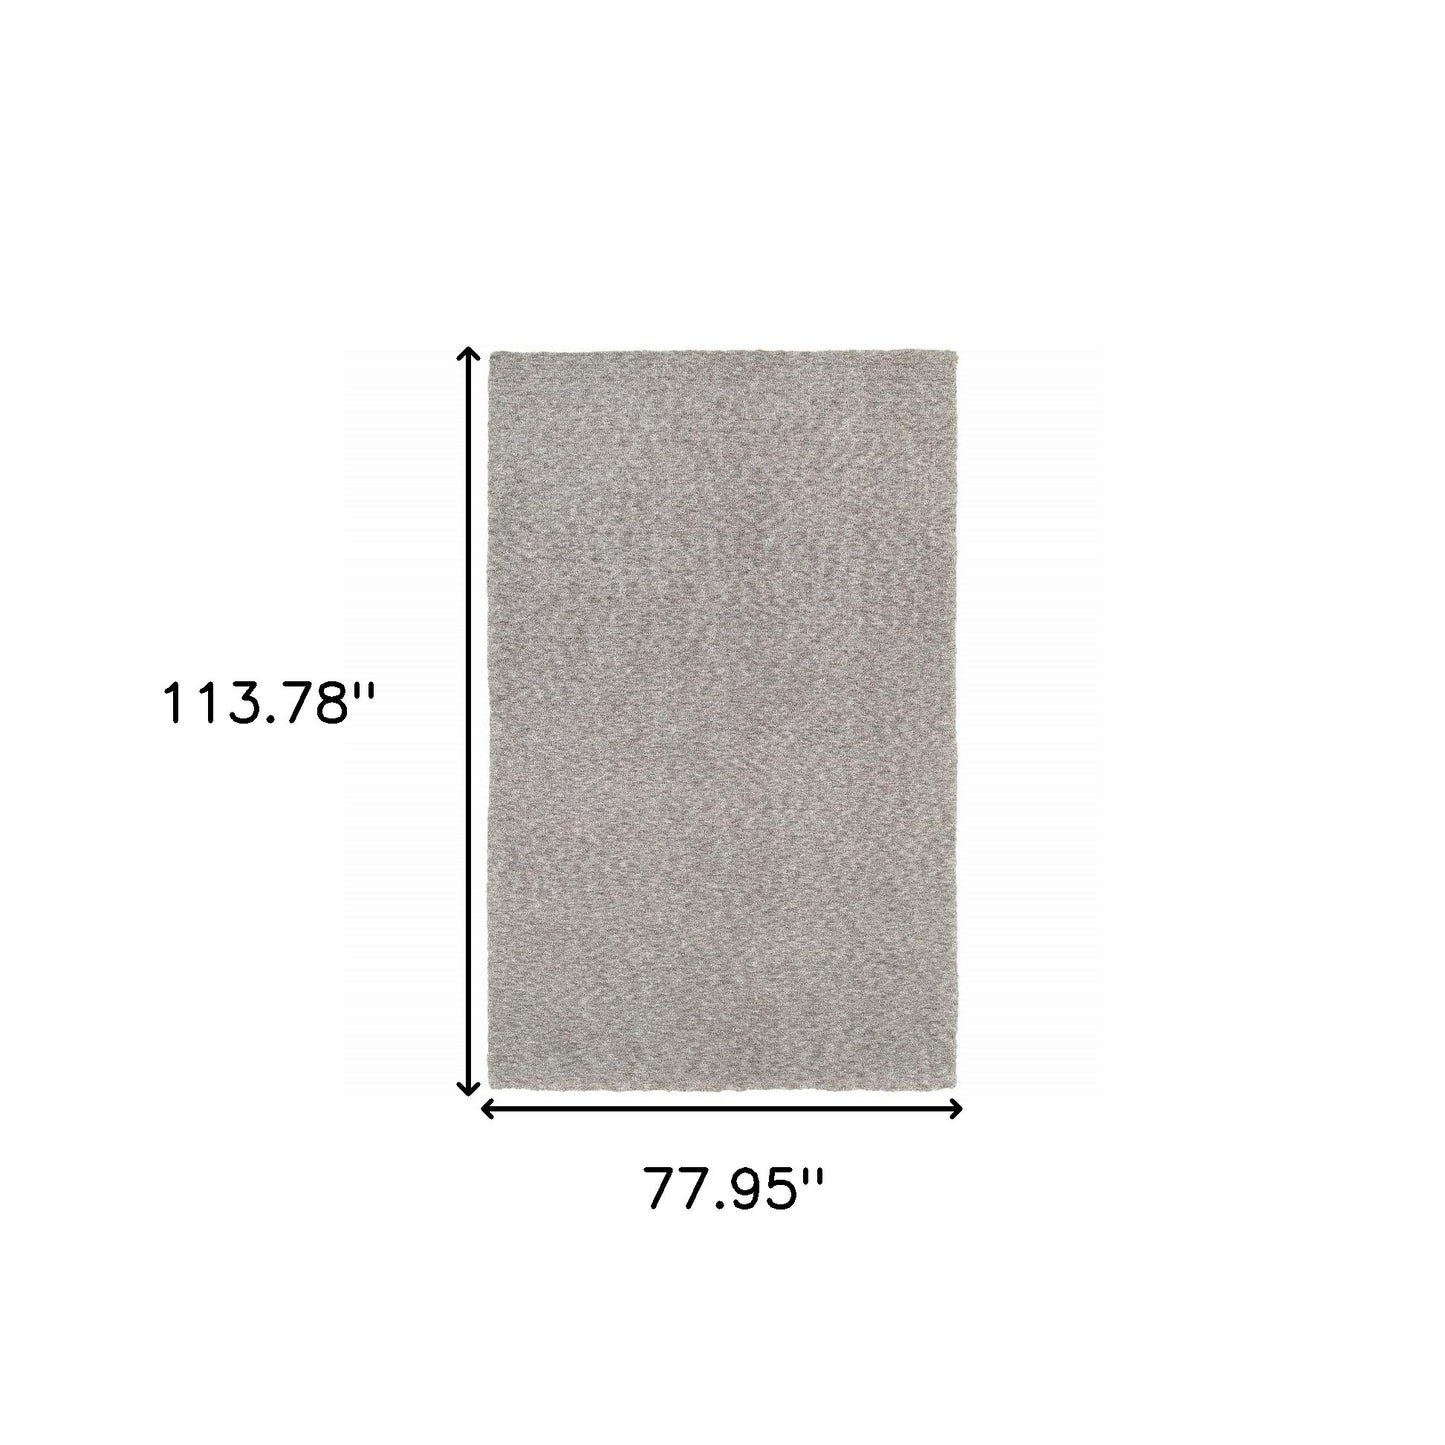 5’ X 7’ Modern Shaggy Soft Gray Indoor Area Rug